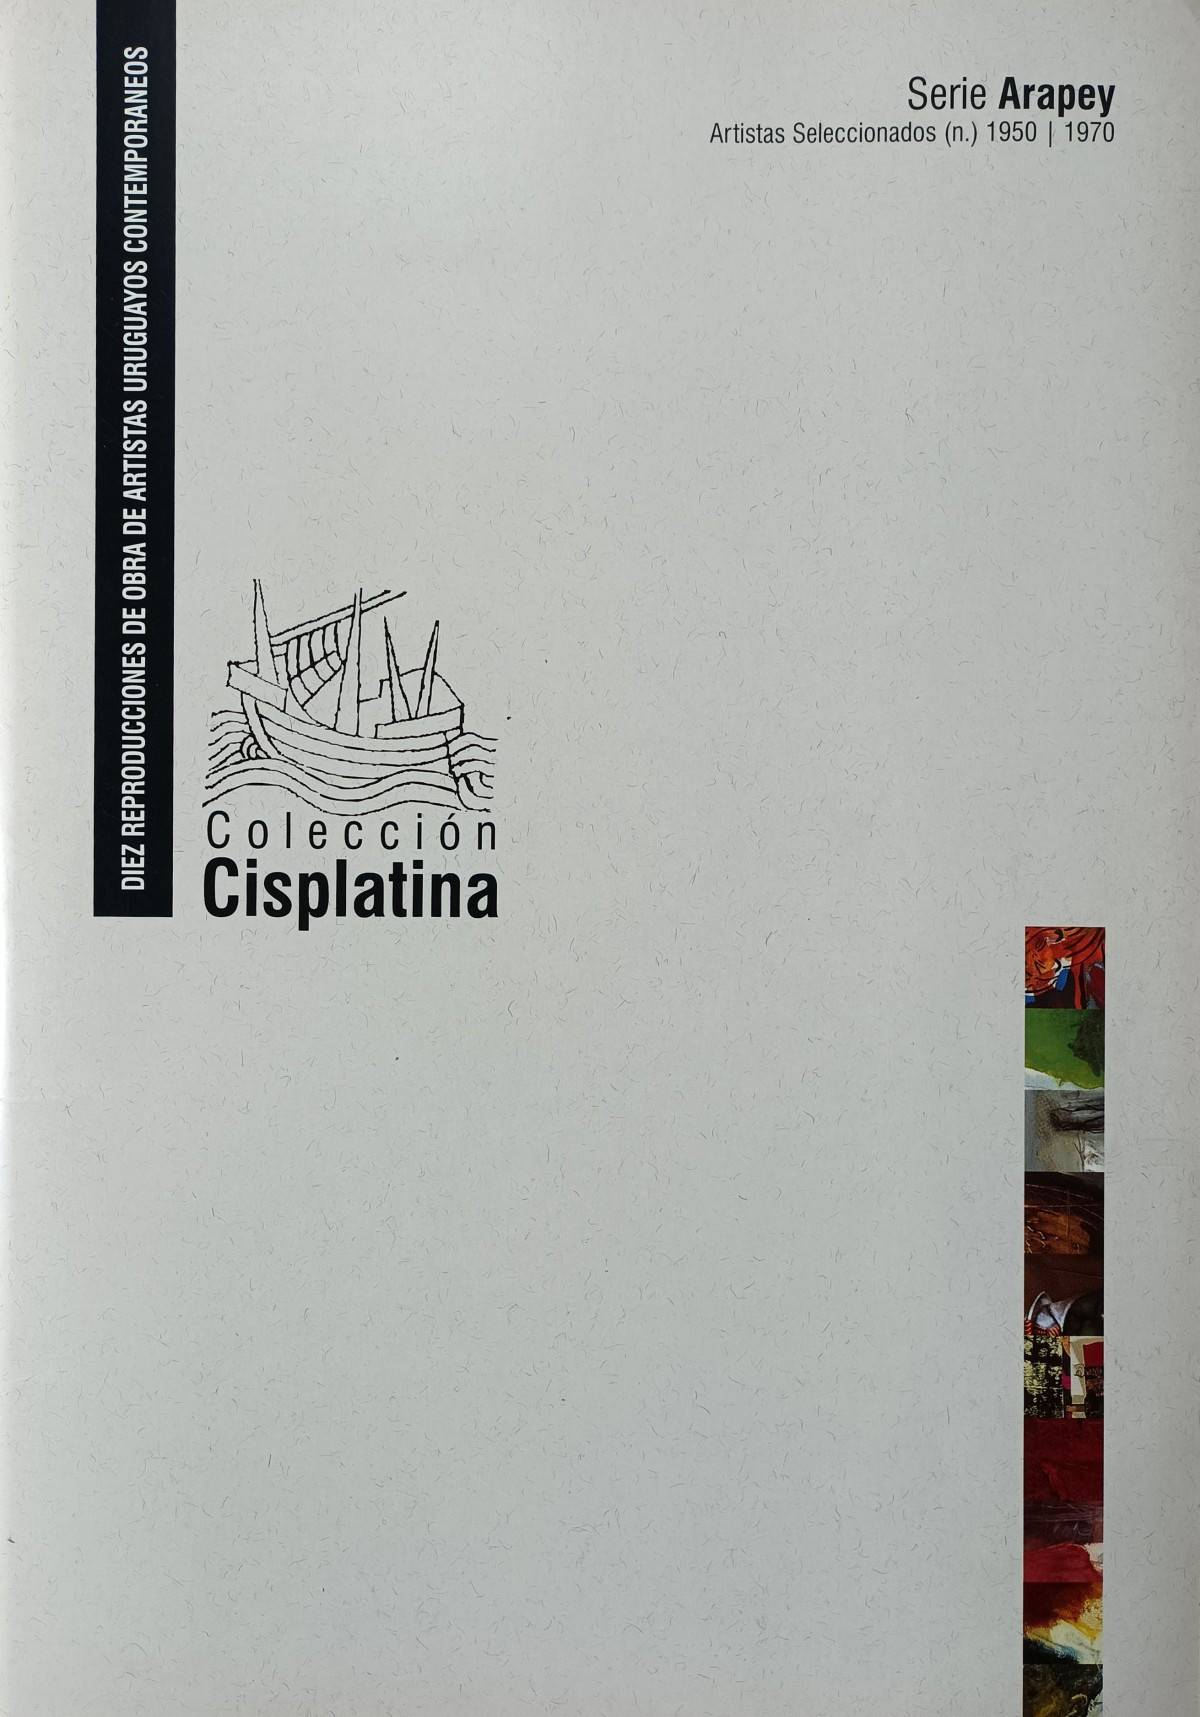 Carpeta Cisplatina Reproducciones Fotográficas Serie Arapey,  . Artistas varios. Impreso.  43 x 29 x  cm. Nº inv. A481.